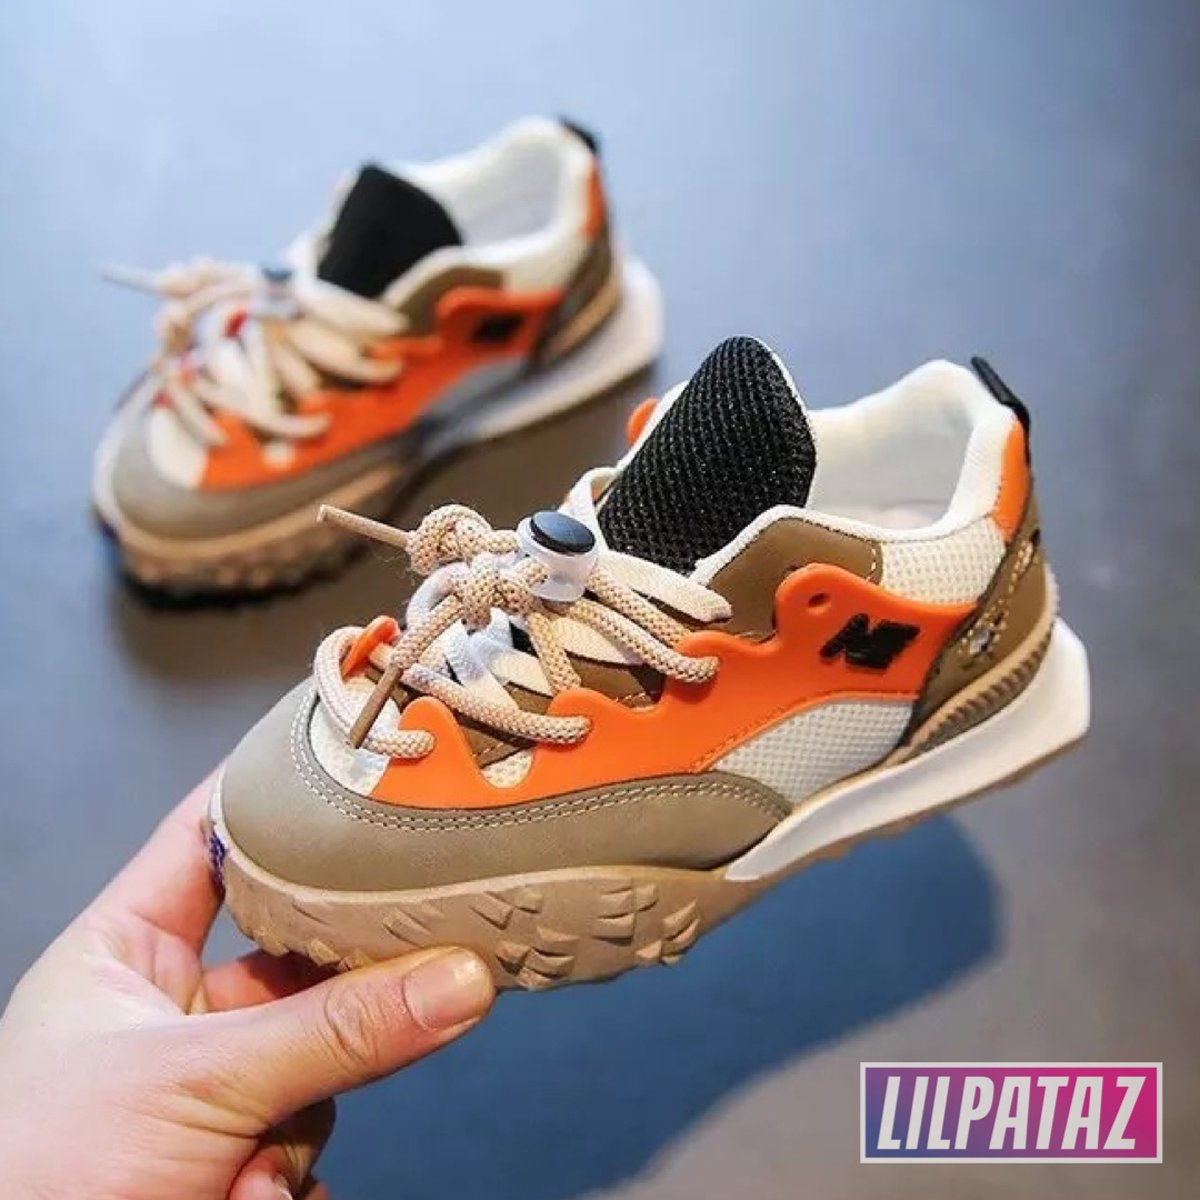 LilPataz Moon Spikes - Lage sneakers - jongens kids kinderen - Oranje Bruin Groen - Maat 31